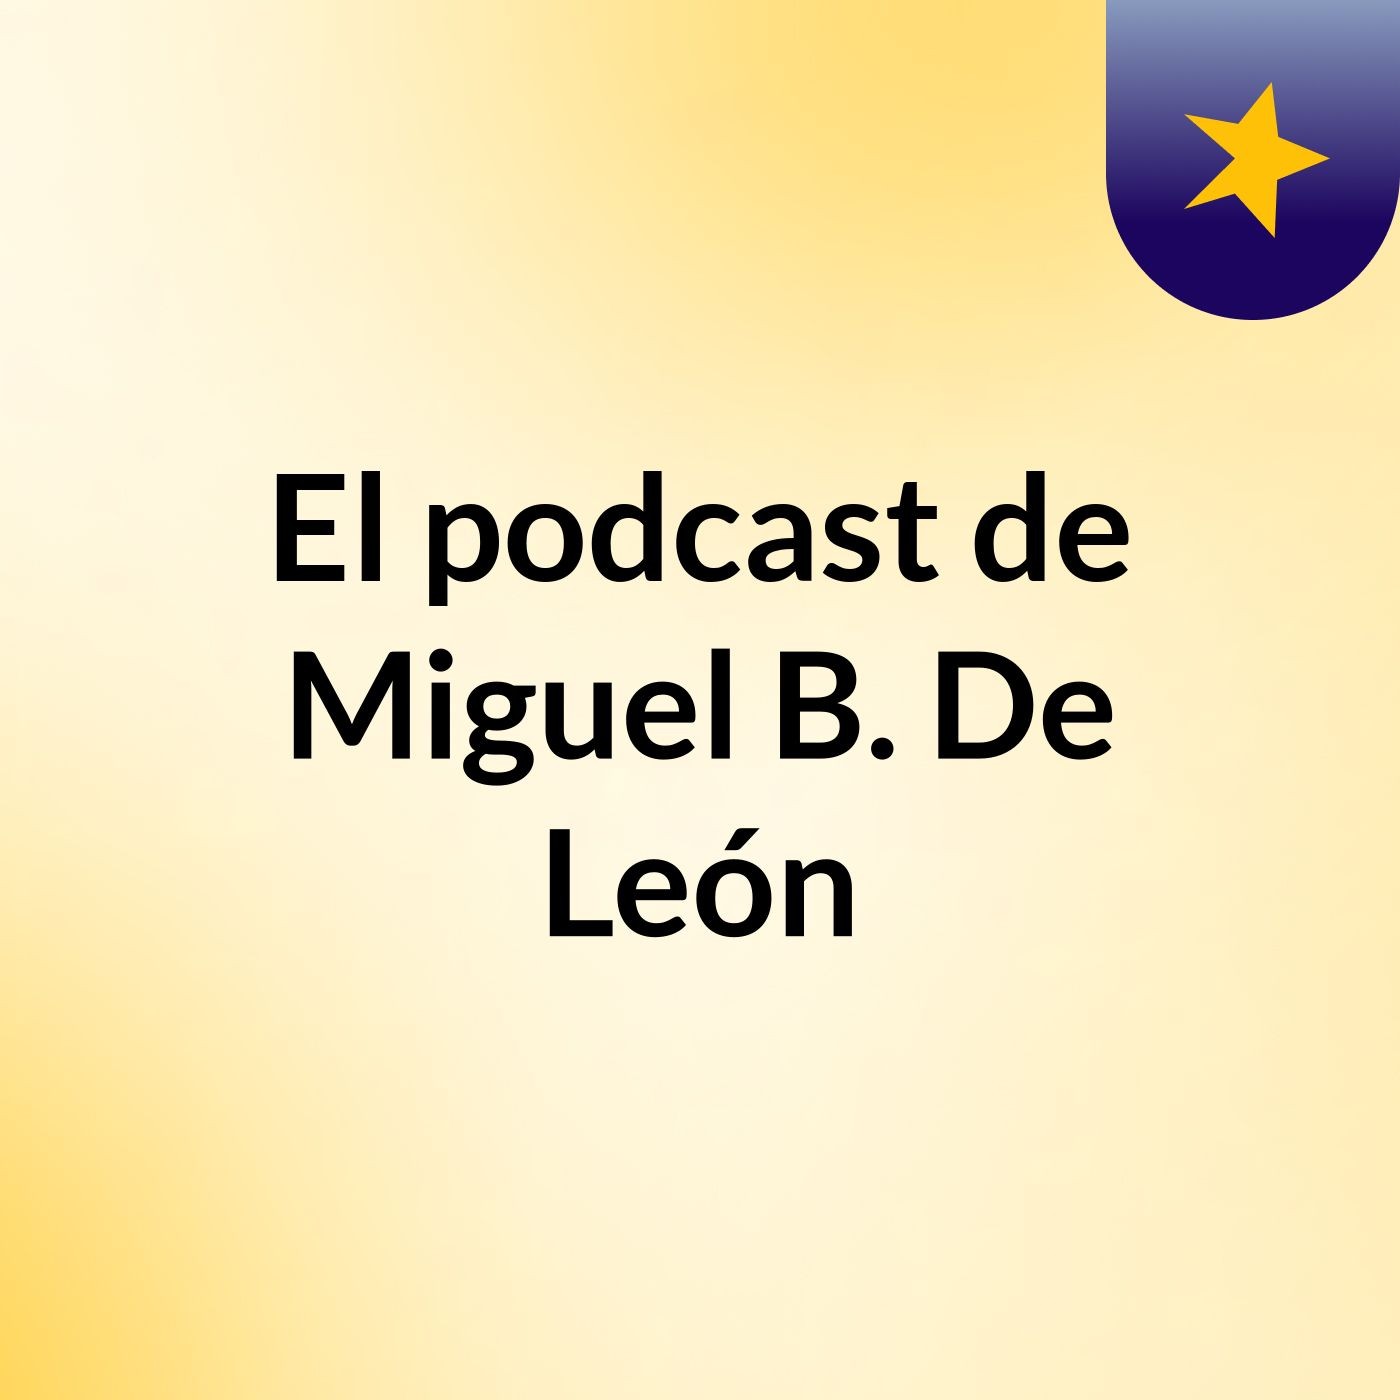 El podcast de Miguel B. De León